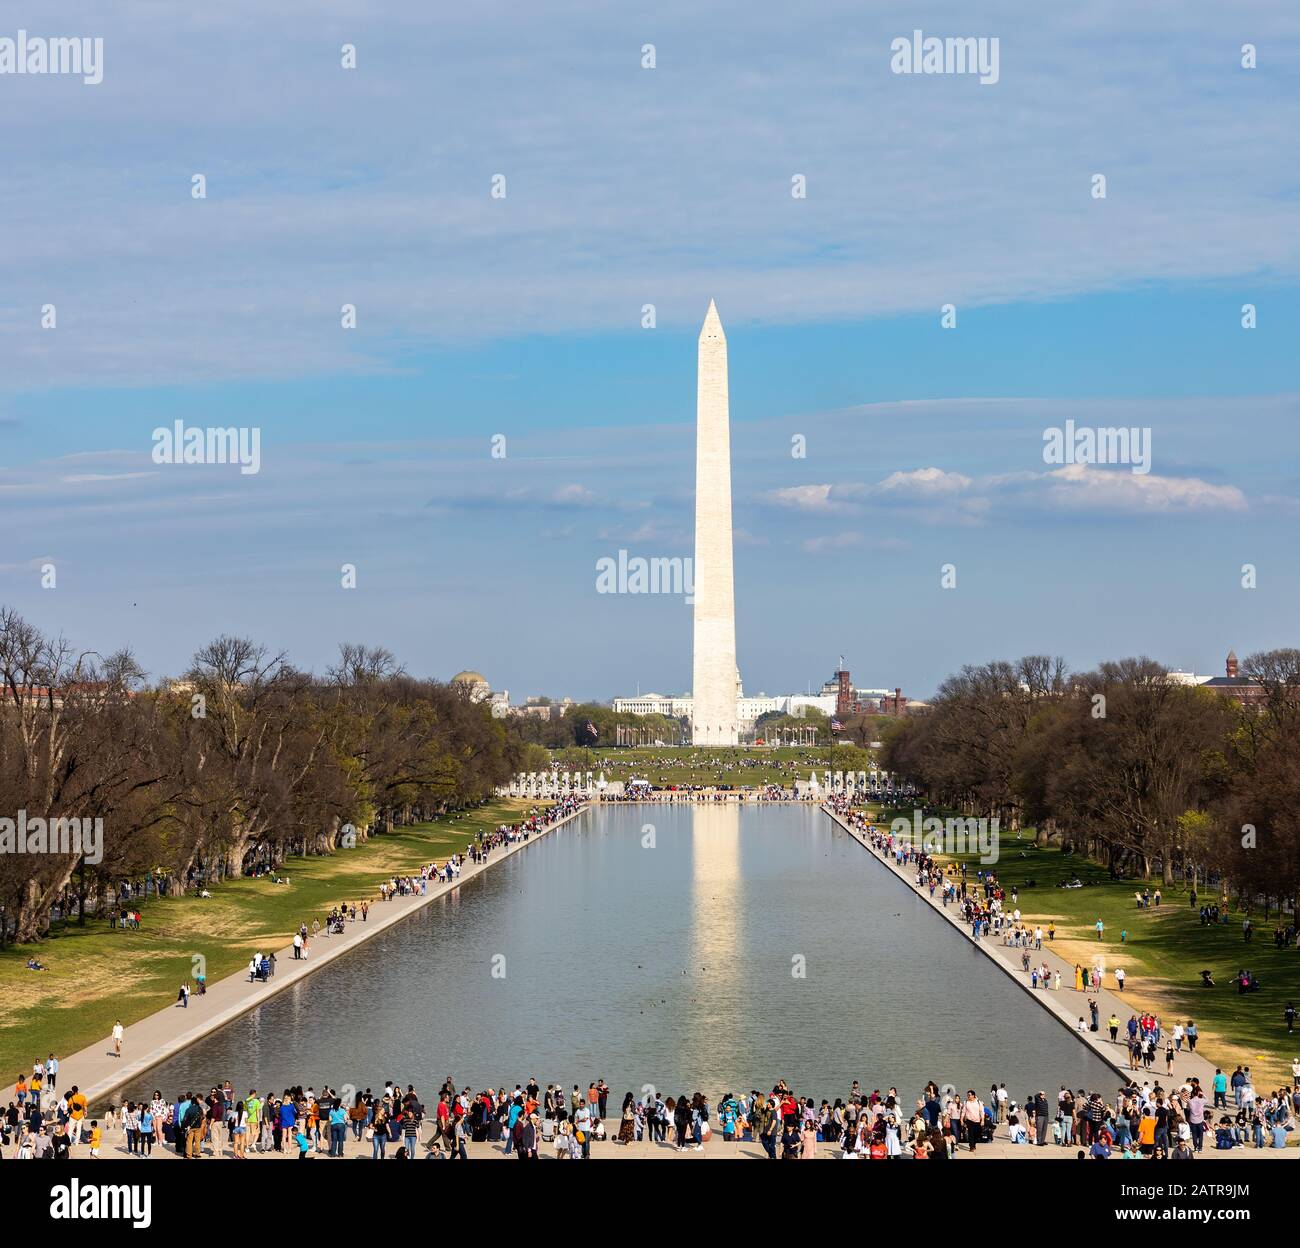 Washington D.C., USA - 6. April 2019: Zehntausende Touristen Thronten während des jährlichen Cherry Blossom Festivals das Washington Monument Stockfoto